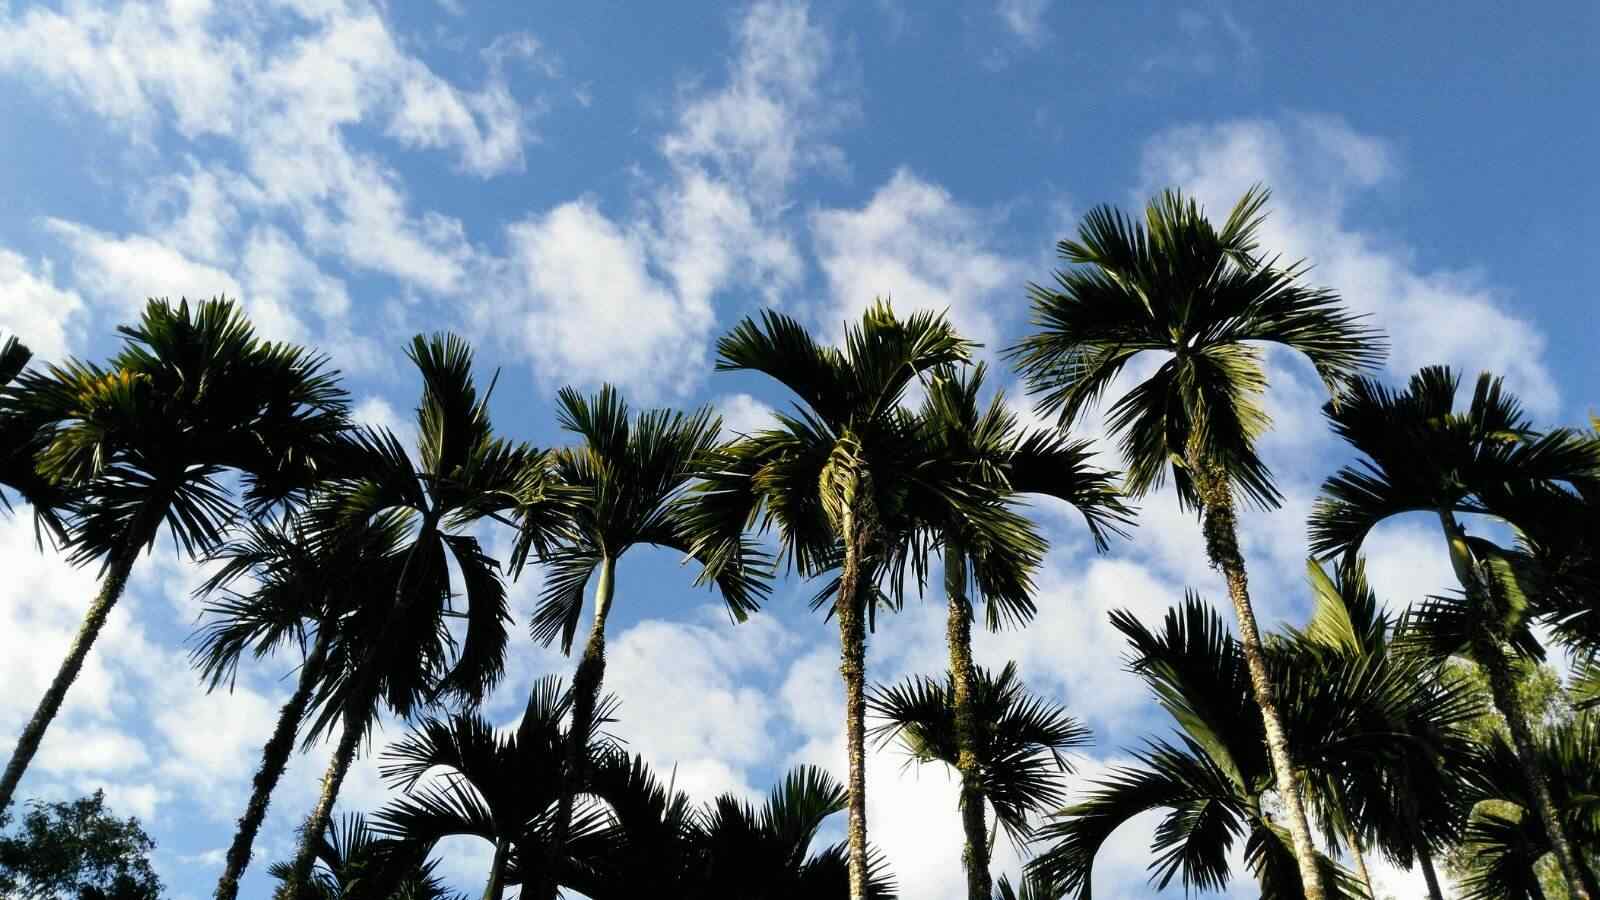 蔚蓝天空下的椰林风景壁纸